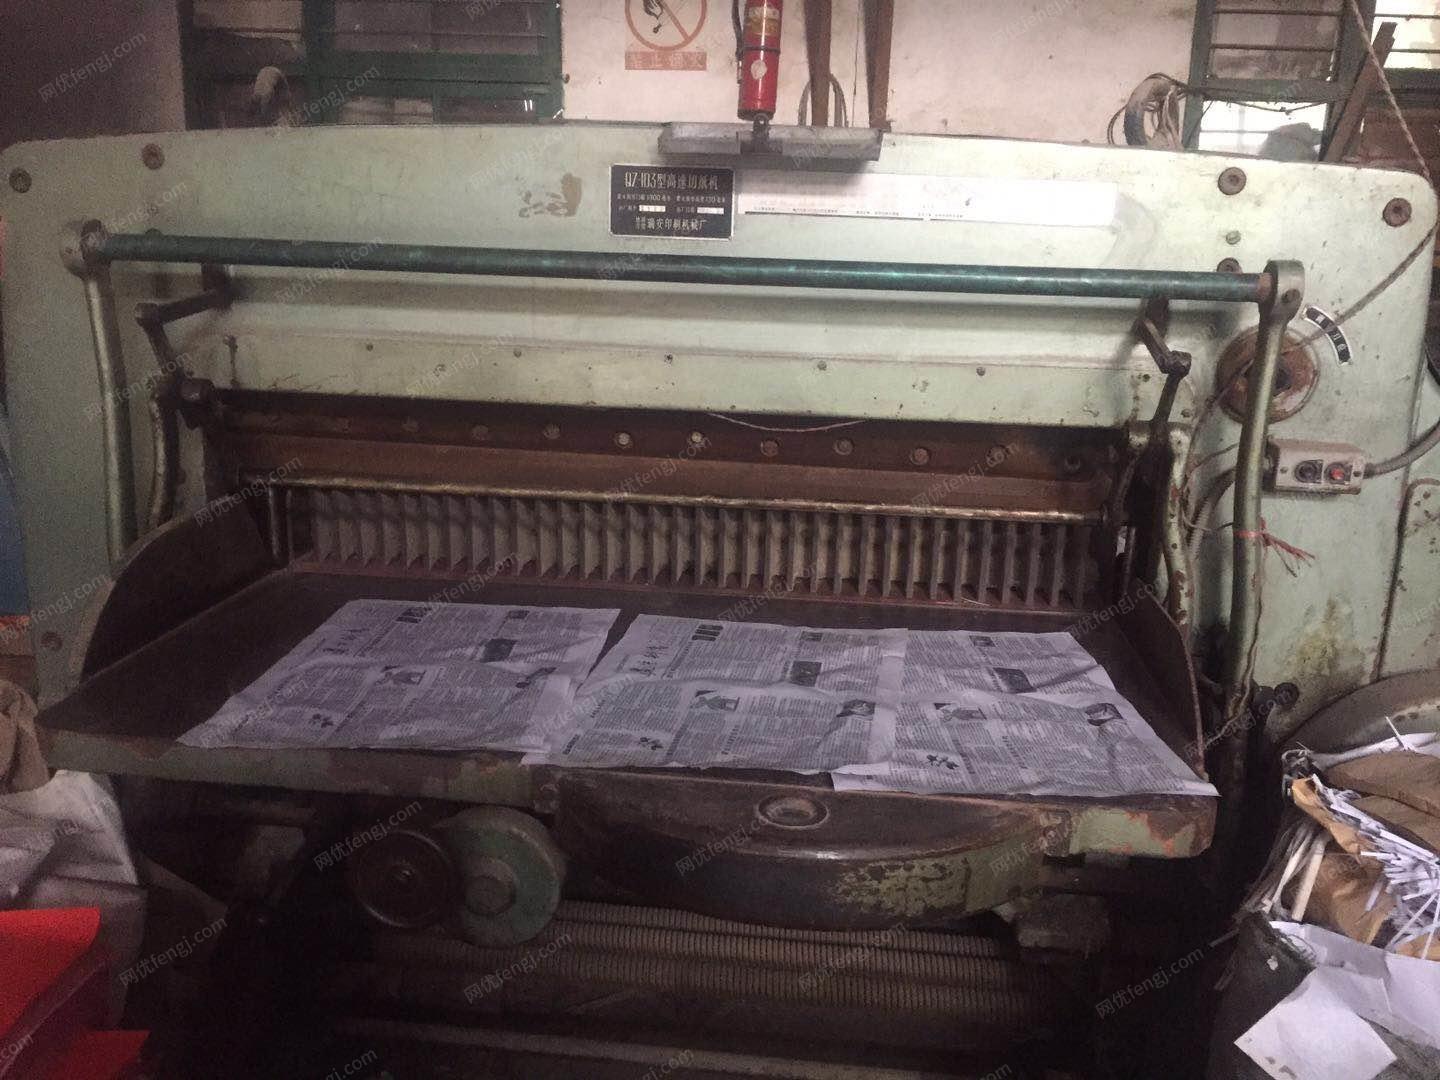 厂家出售山东单色四开印刷机2台.半自动全开切纸机1台.4开晒版机，自动订书机1台.